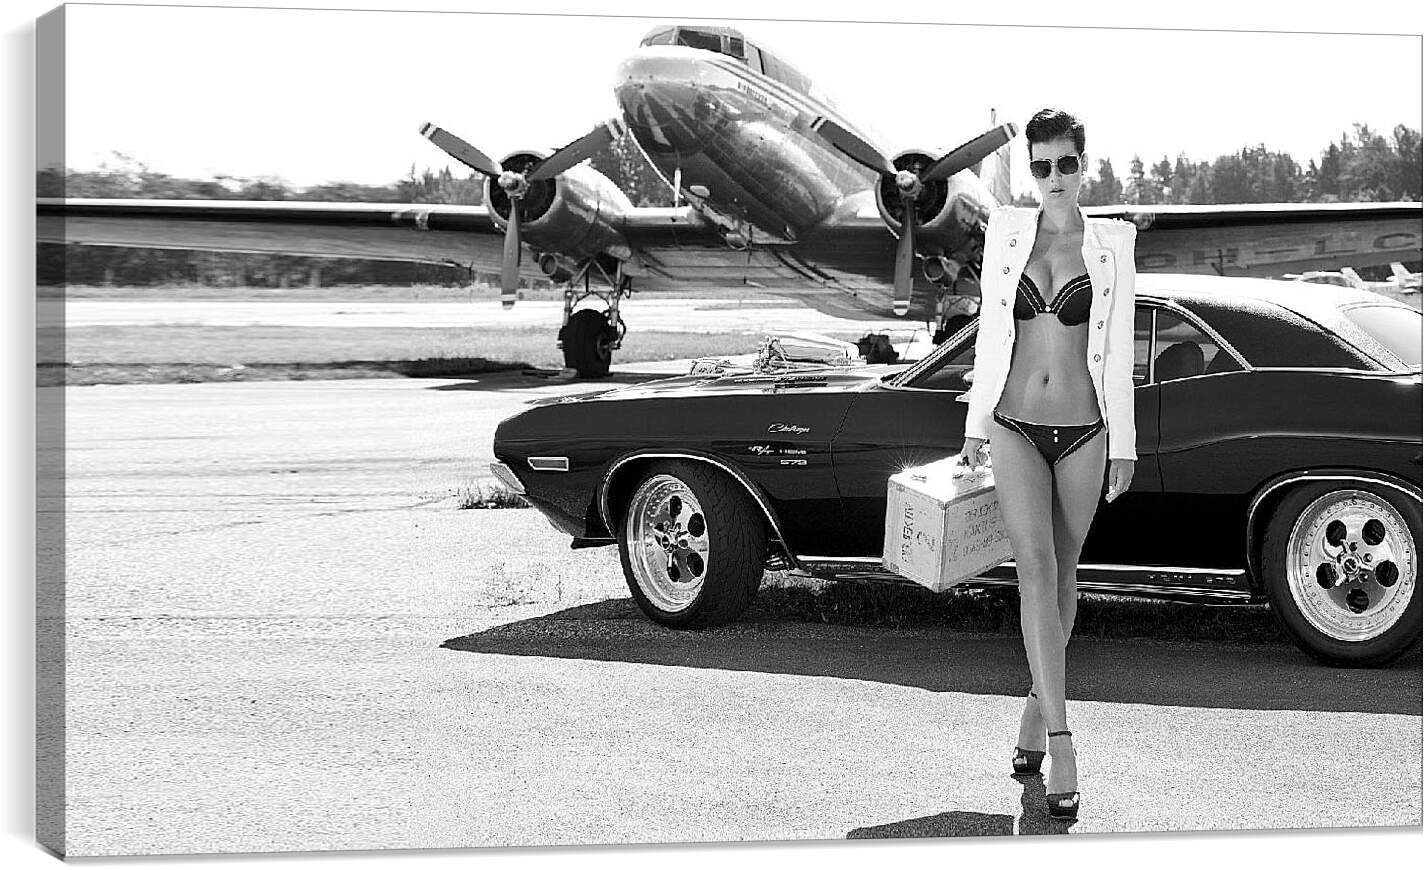 Постер и плакат - Девушка, авто и самолет